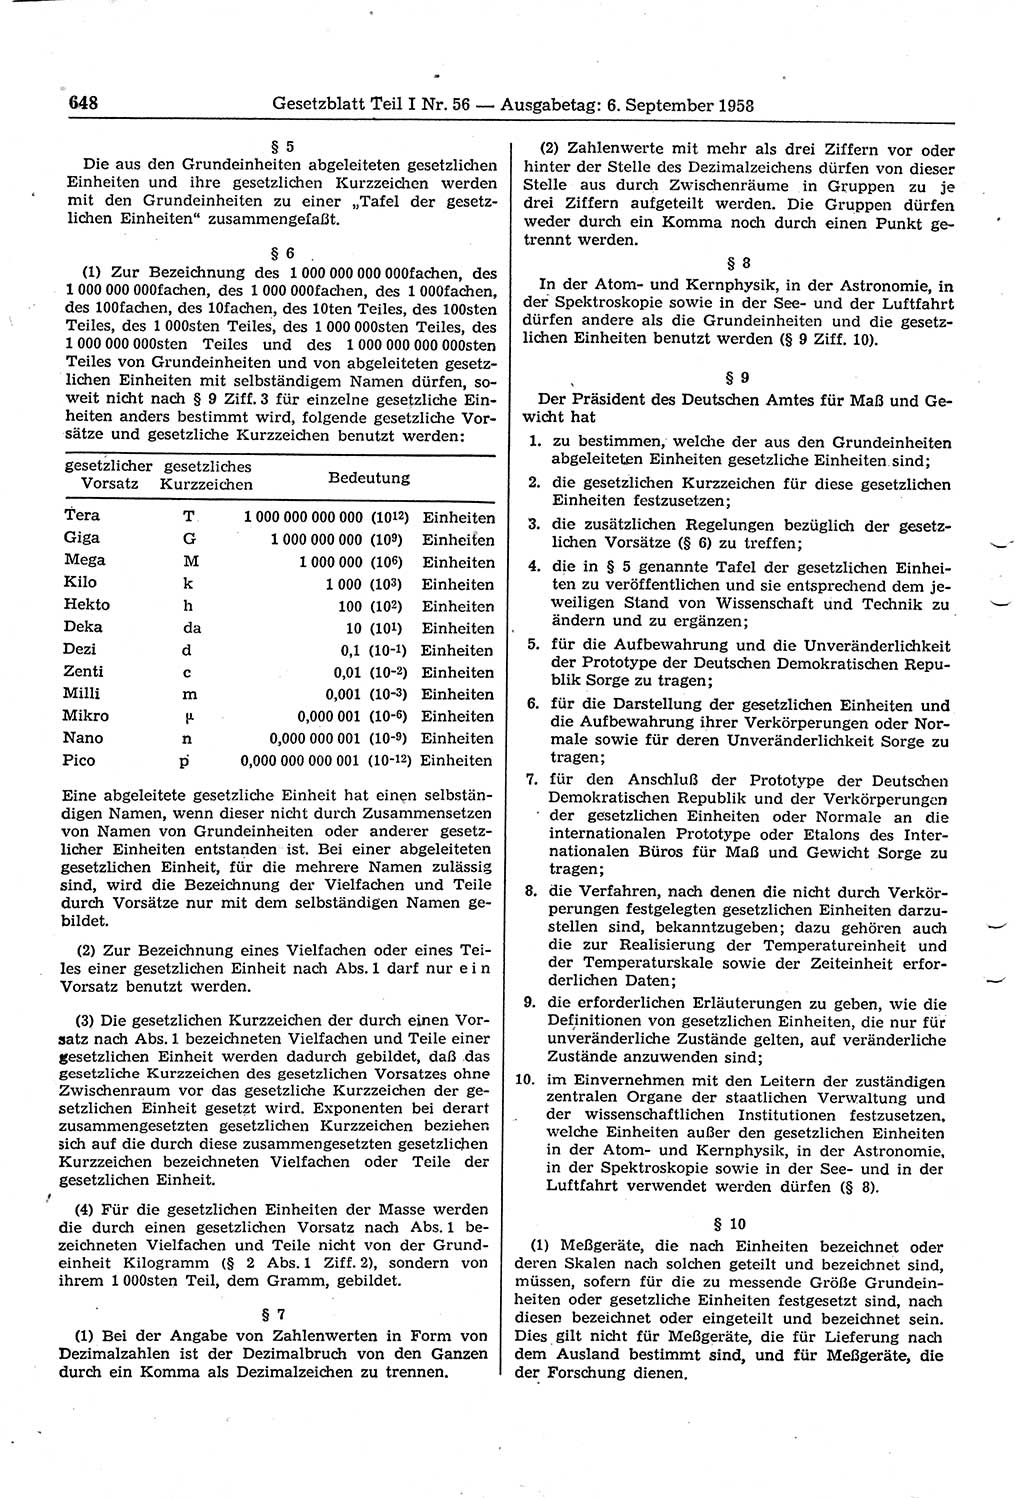 Gesetzblatt (GBl.) der Deutschen Demokratischen Republik (DDR) Teil Ⅰ 1958, Seite 648 (GBl. DDR Ⅰ 1958, S. 648)